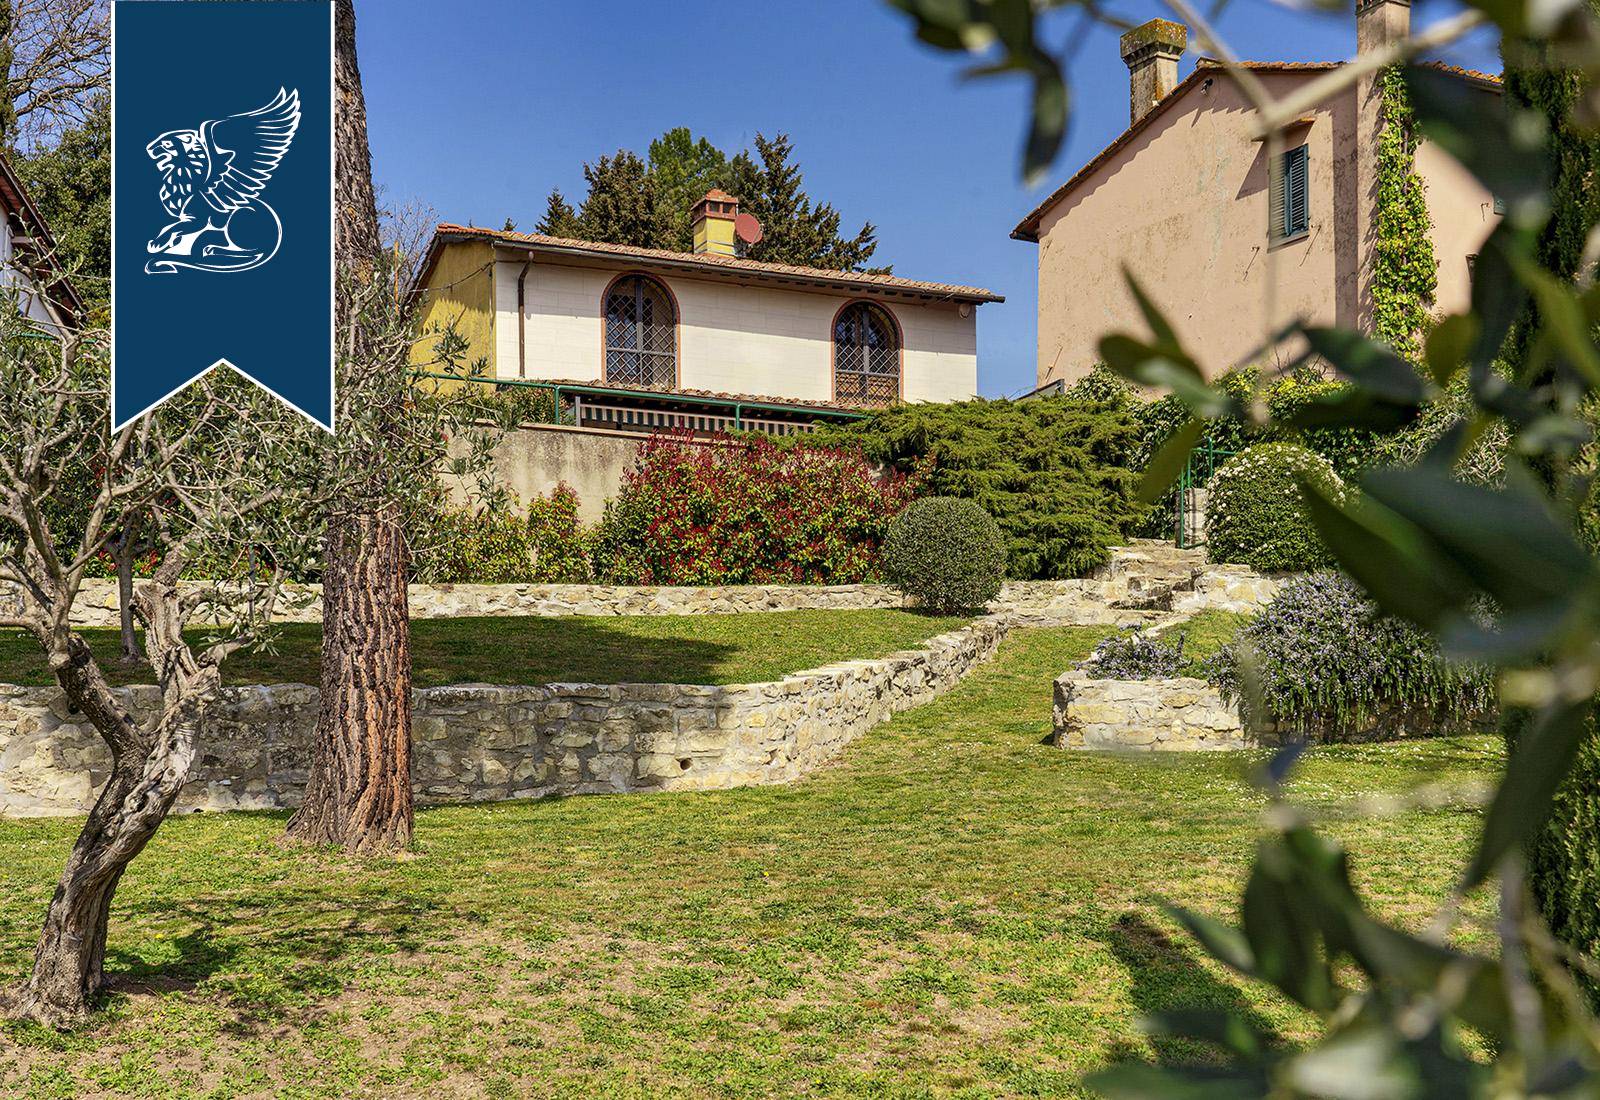 Villa in Vendita a Firenze: 0 locali, 300 mq - Foto 4